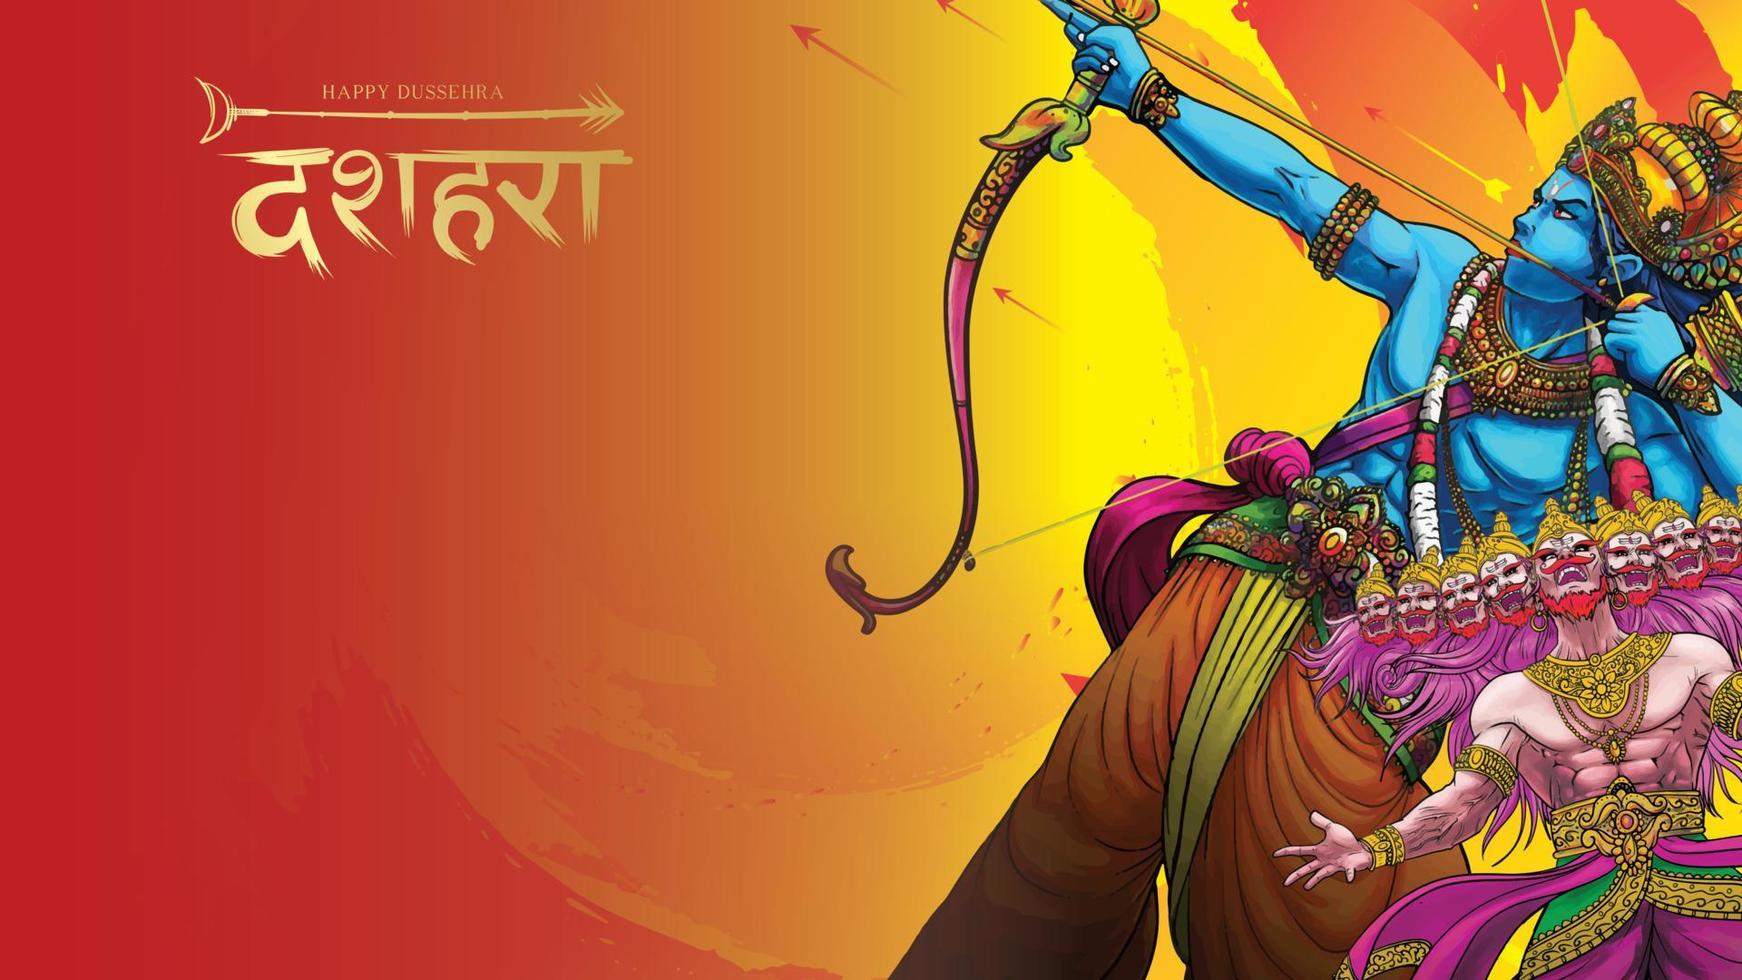 heer rama die ravana vermoordt in het gelukkige dussehra navratri-posterfestival van india. vertaling dussehra vector